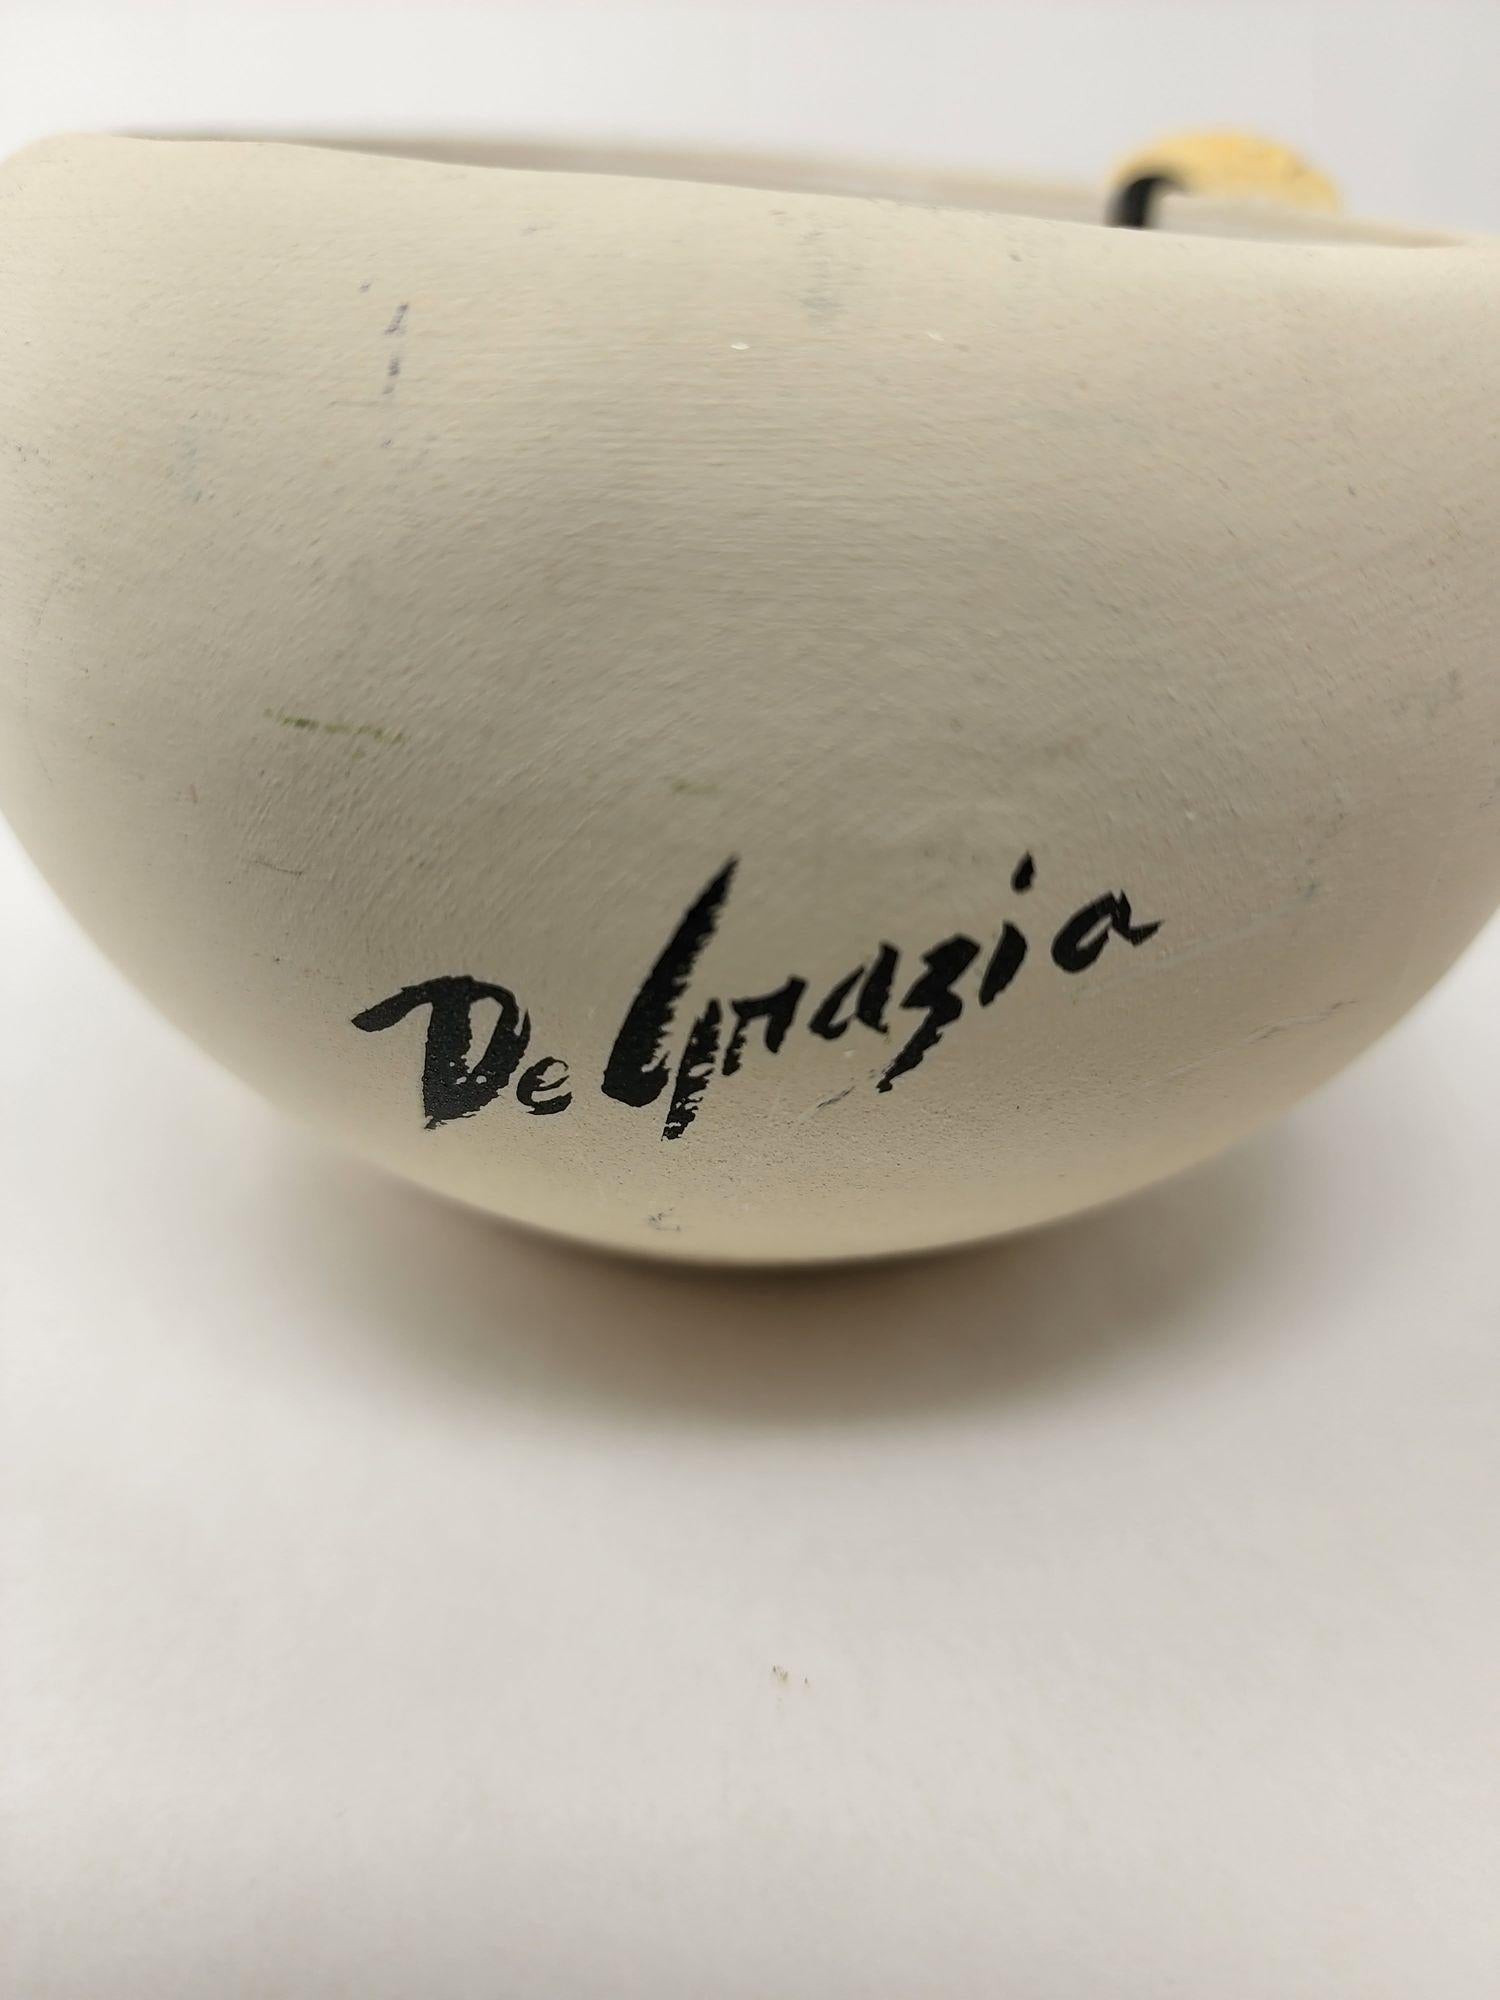 Vintage-Kerzenhalter, hergestellt von dem bekannten Künstler Ted De Grazia aus Tucson AZ.
Vintage Hand-thrown DeGrazia 